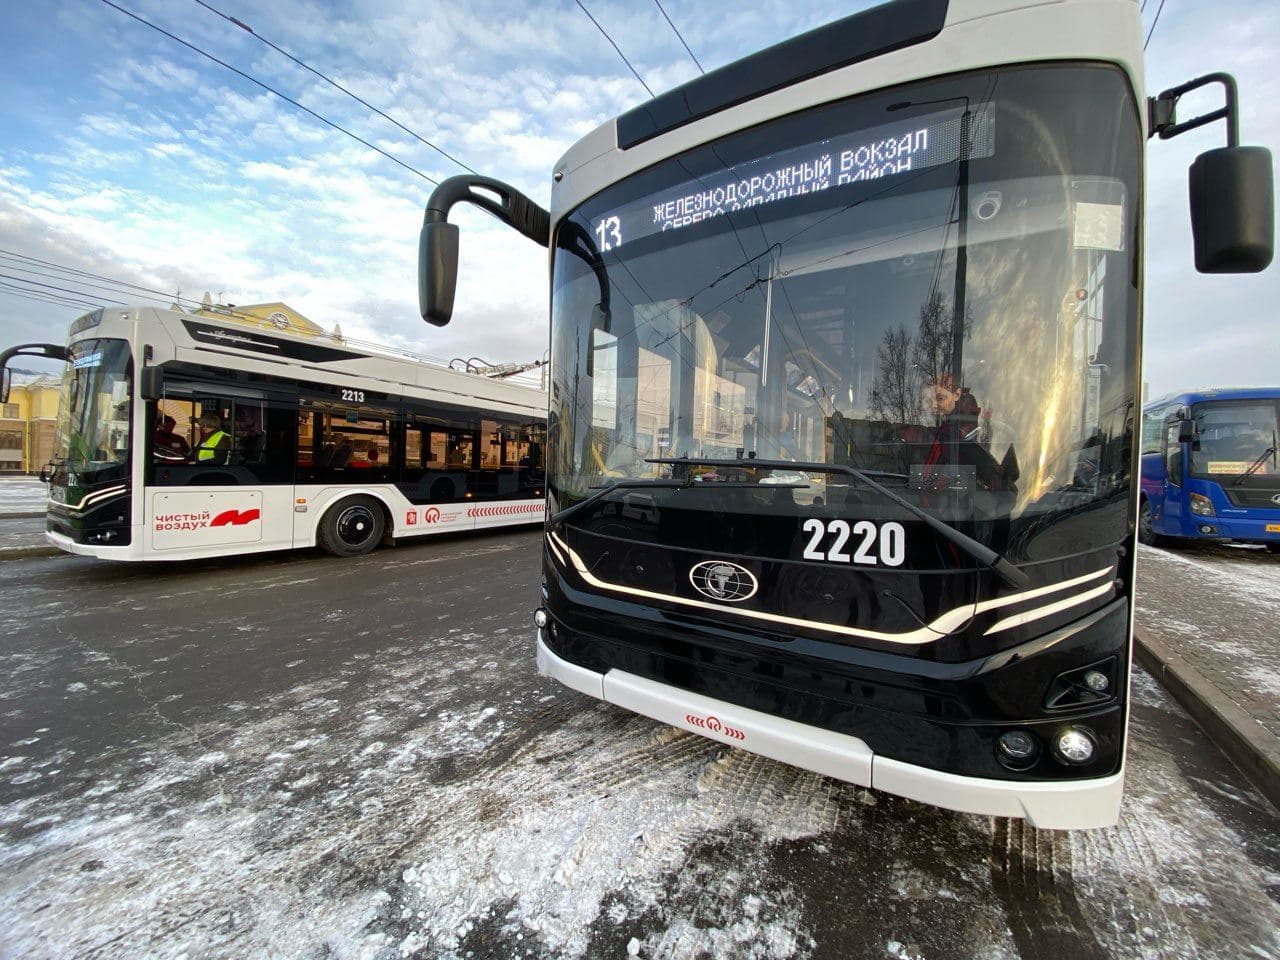 Автобус 4 троллейбус. Троллейбус Адмирал Красноярск. Адмирал низкопольный троллейбус 6281. «Адмирал» низкопольный троллейбус 6281с увеличенным автономным ходом. Новый троллейбус Адмирал Красноярск.